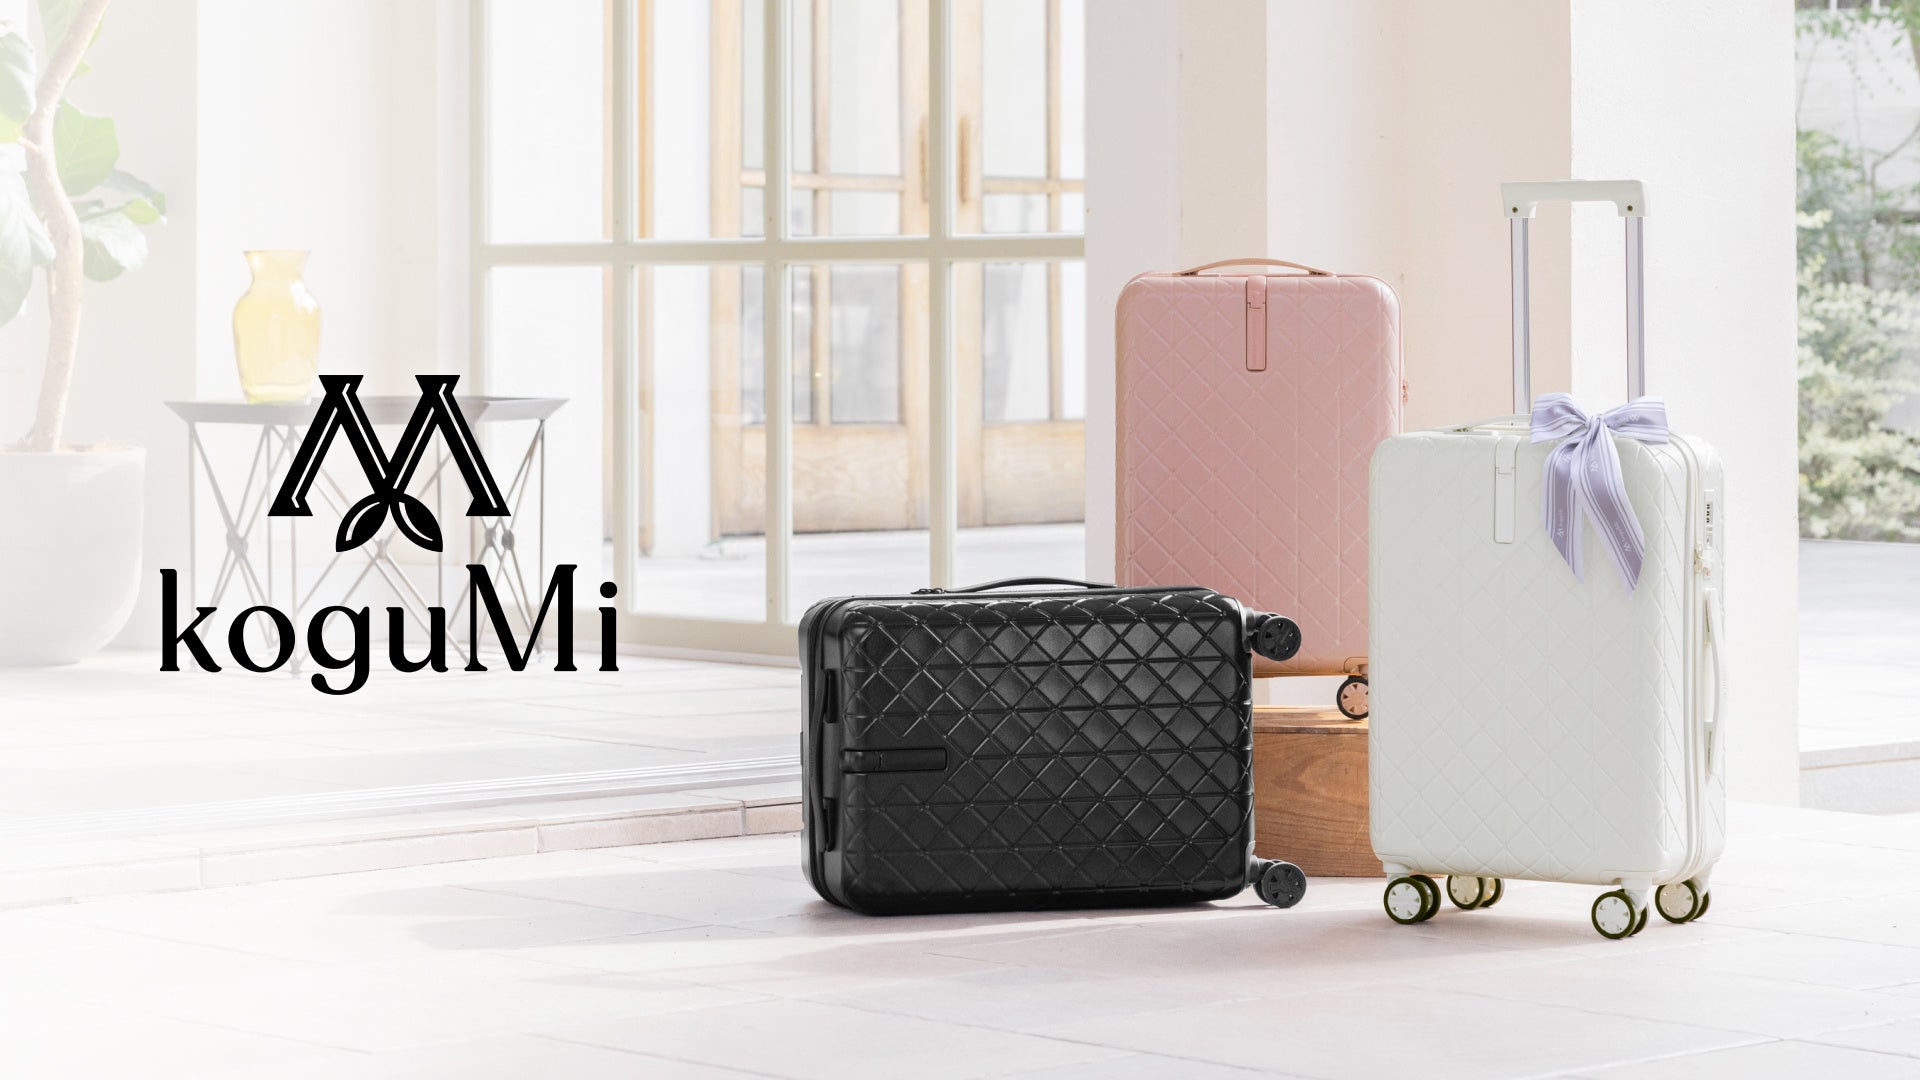 【Amazon Black Friday】高機能スーツケース「MAIMO」や人気の寝具「GOKUMIN」をセール価格で販売中！